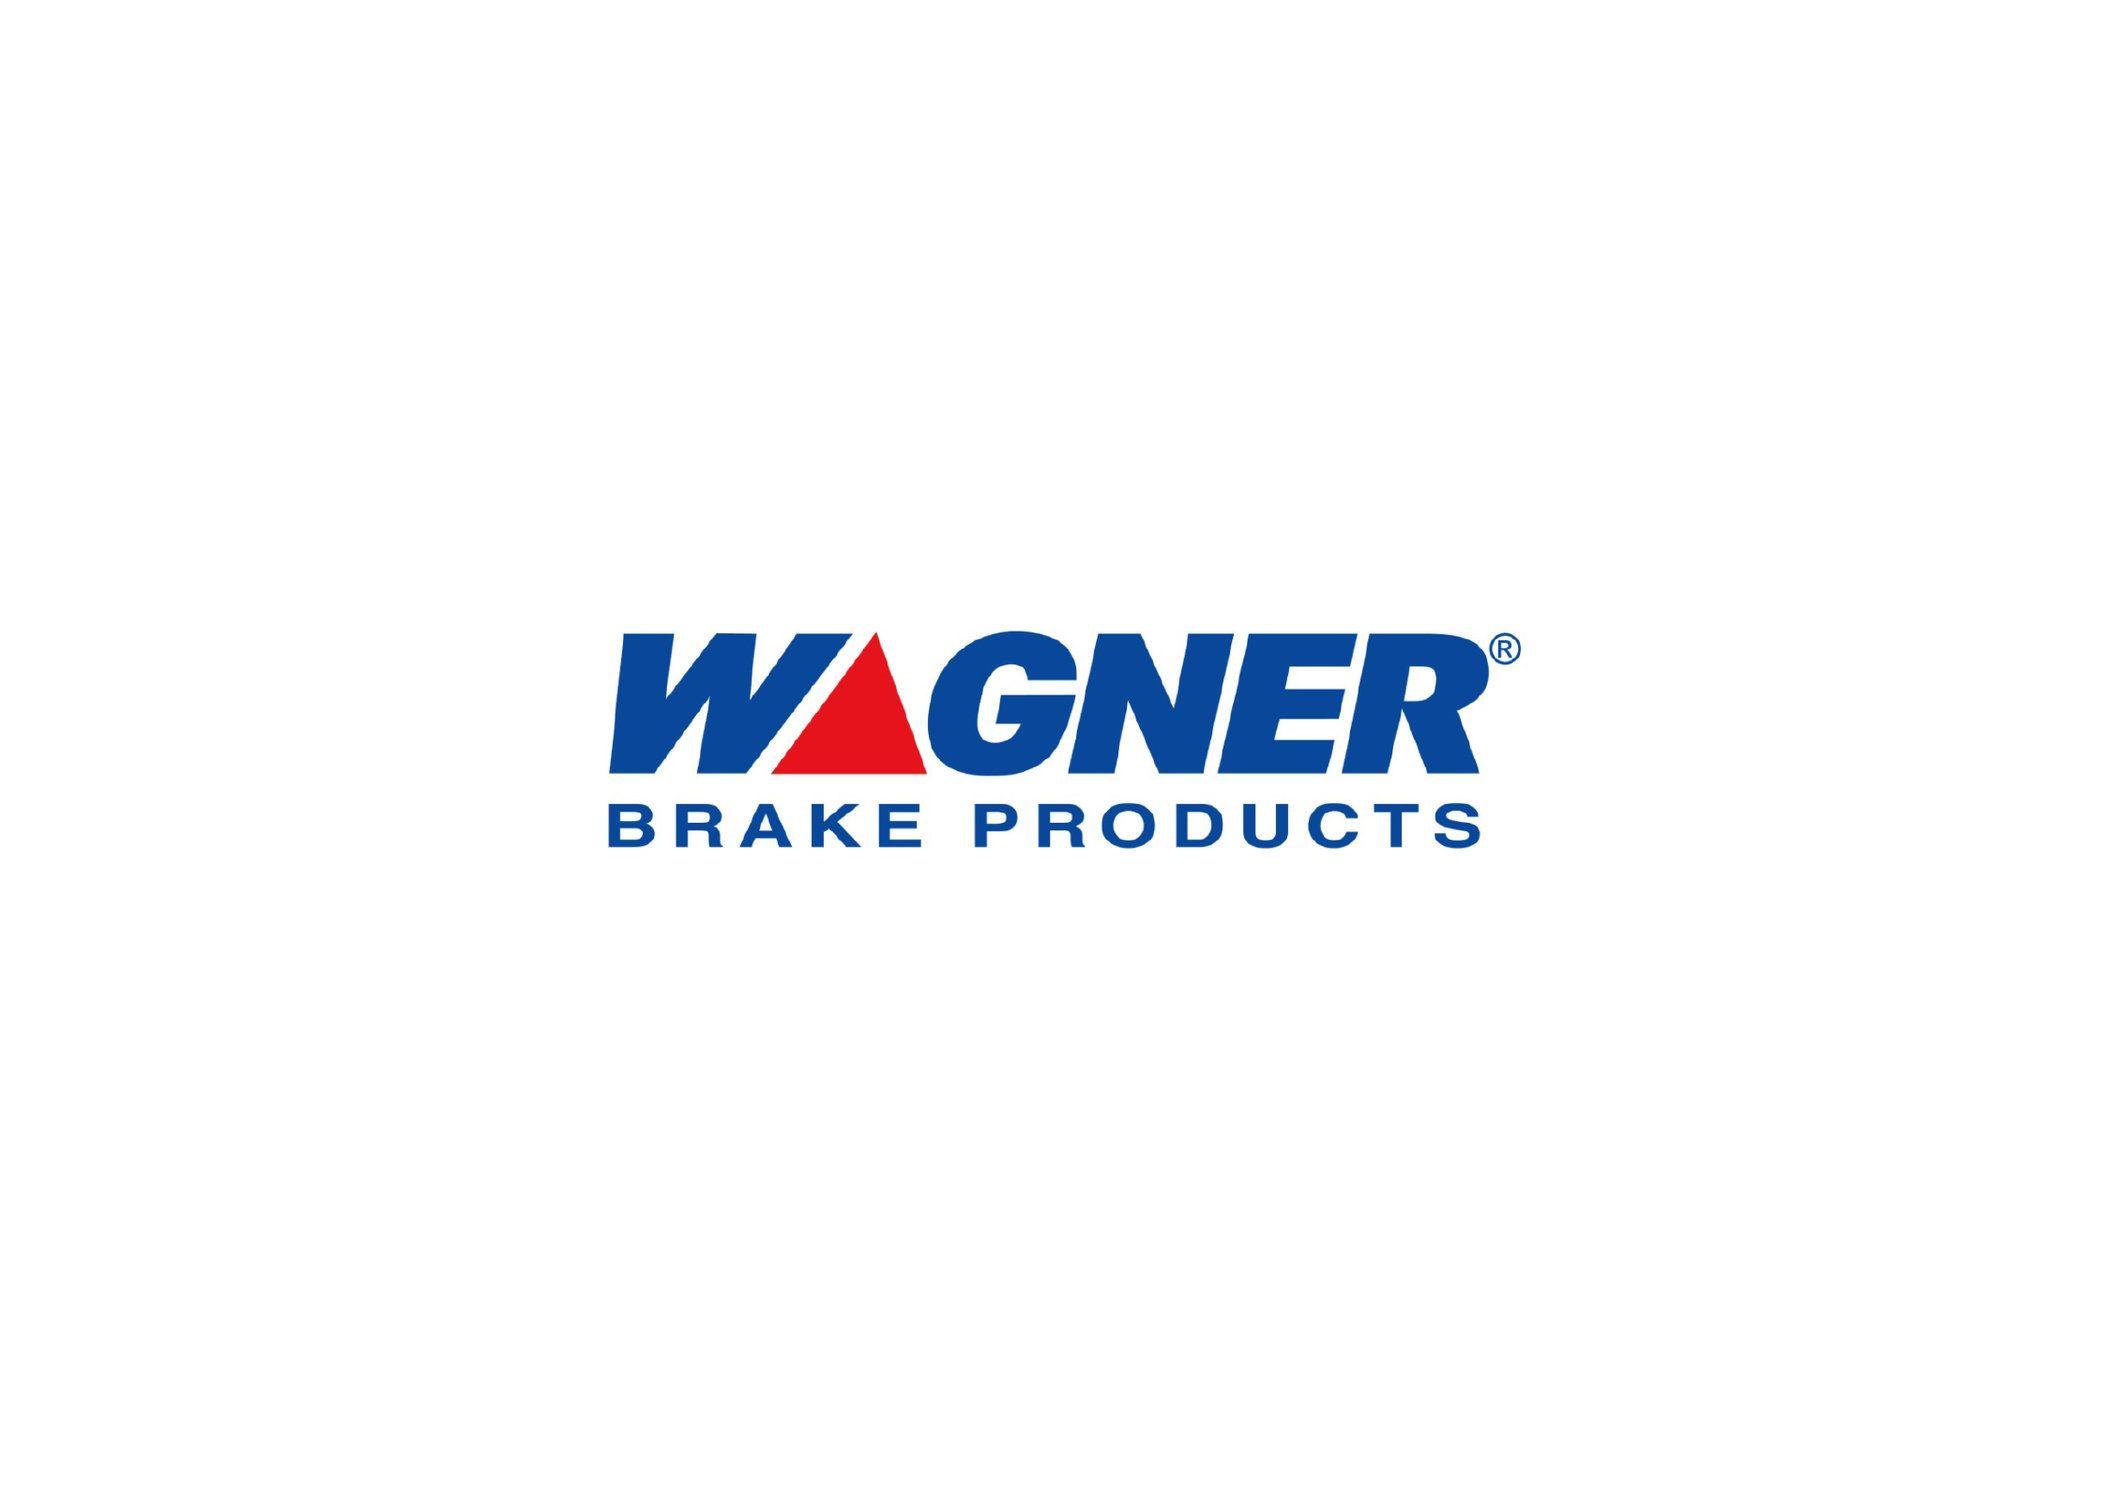 Wagner Logo - Wagner Brakes